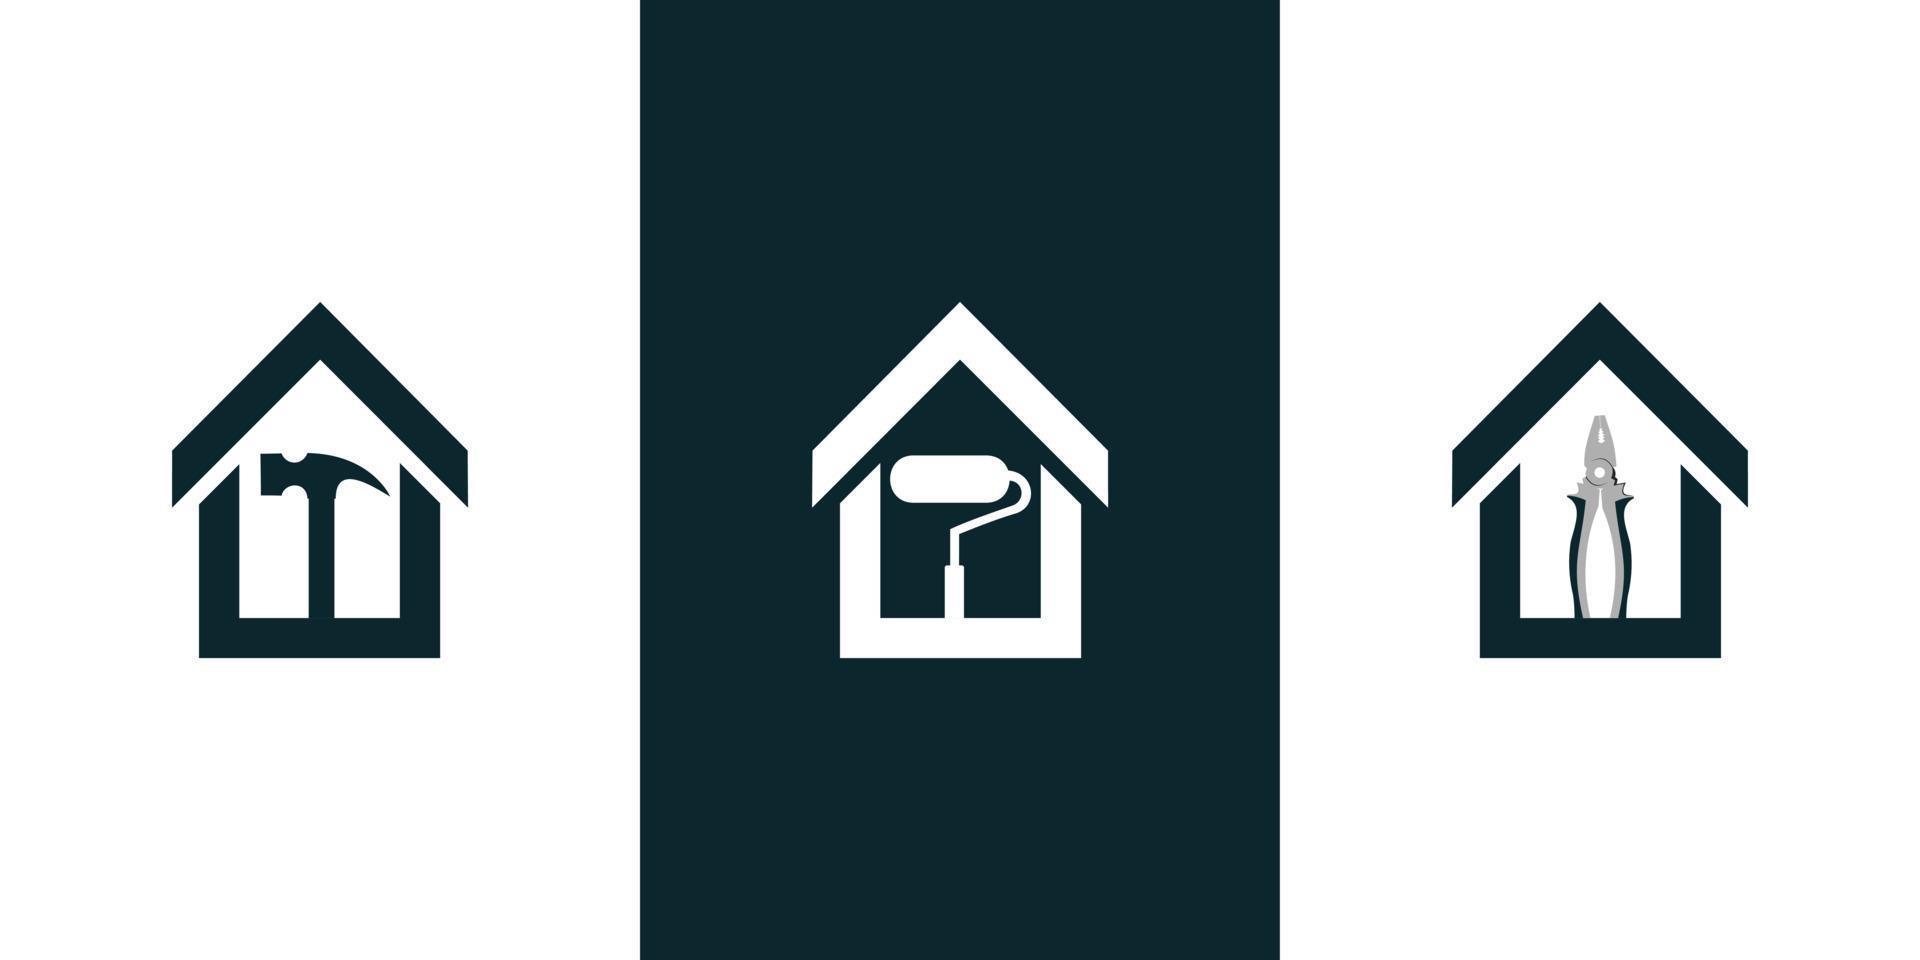 Repair house logo design Premium Vector